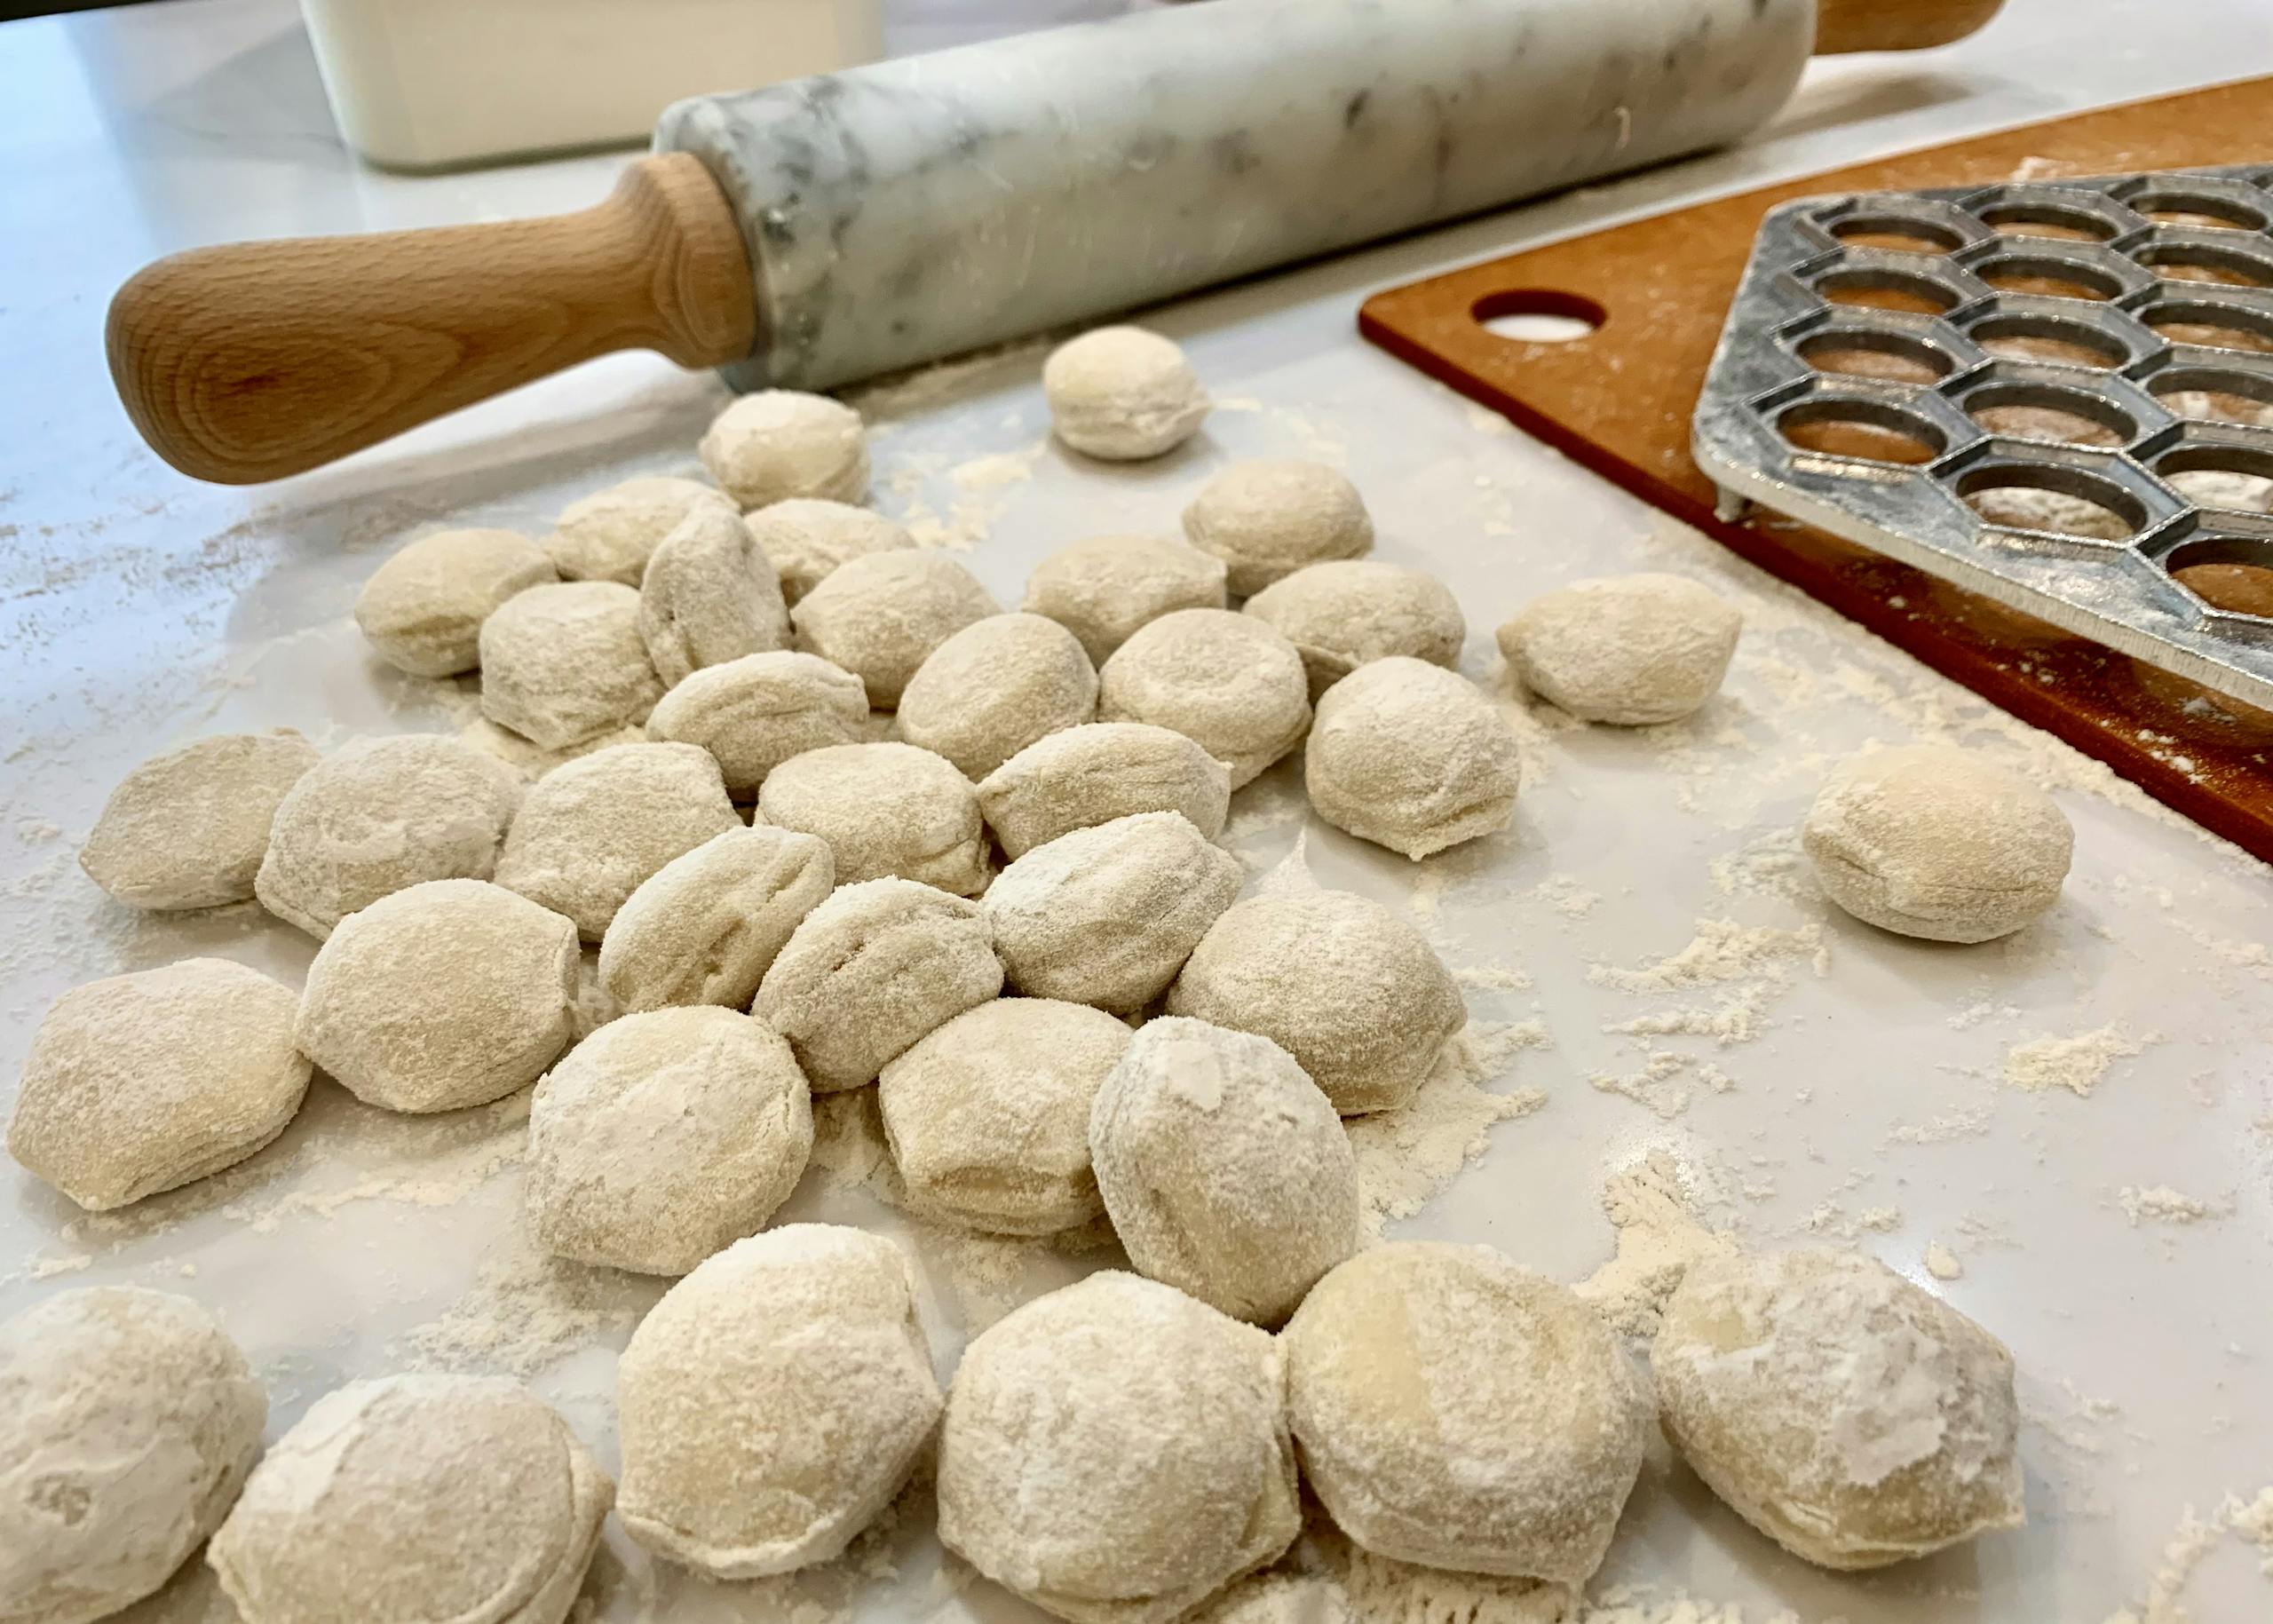 Photo of raw Pelemeni dumplings